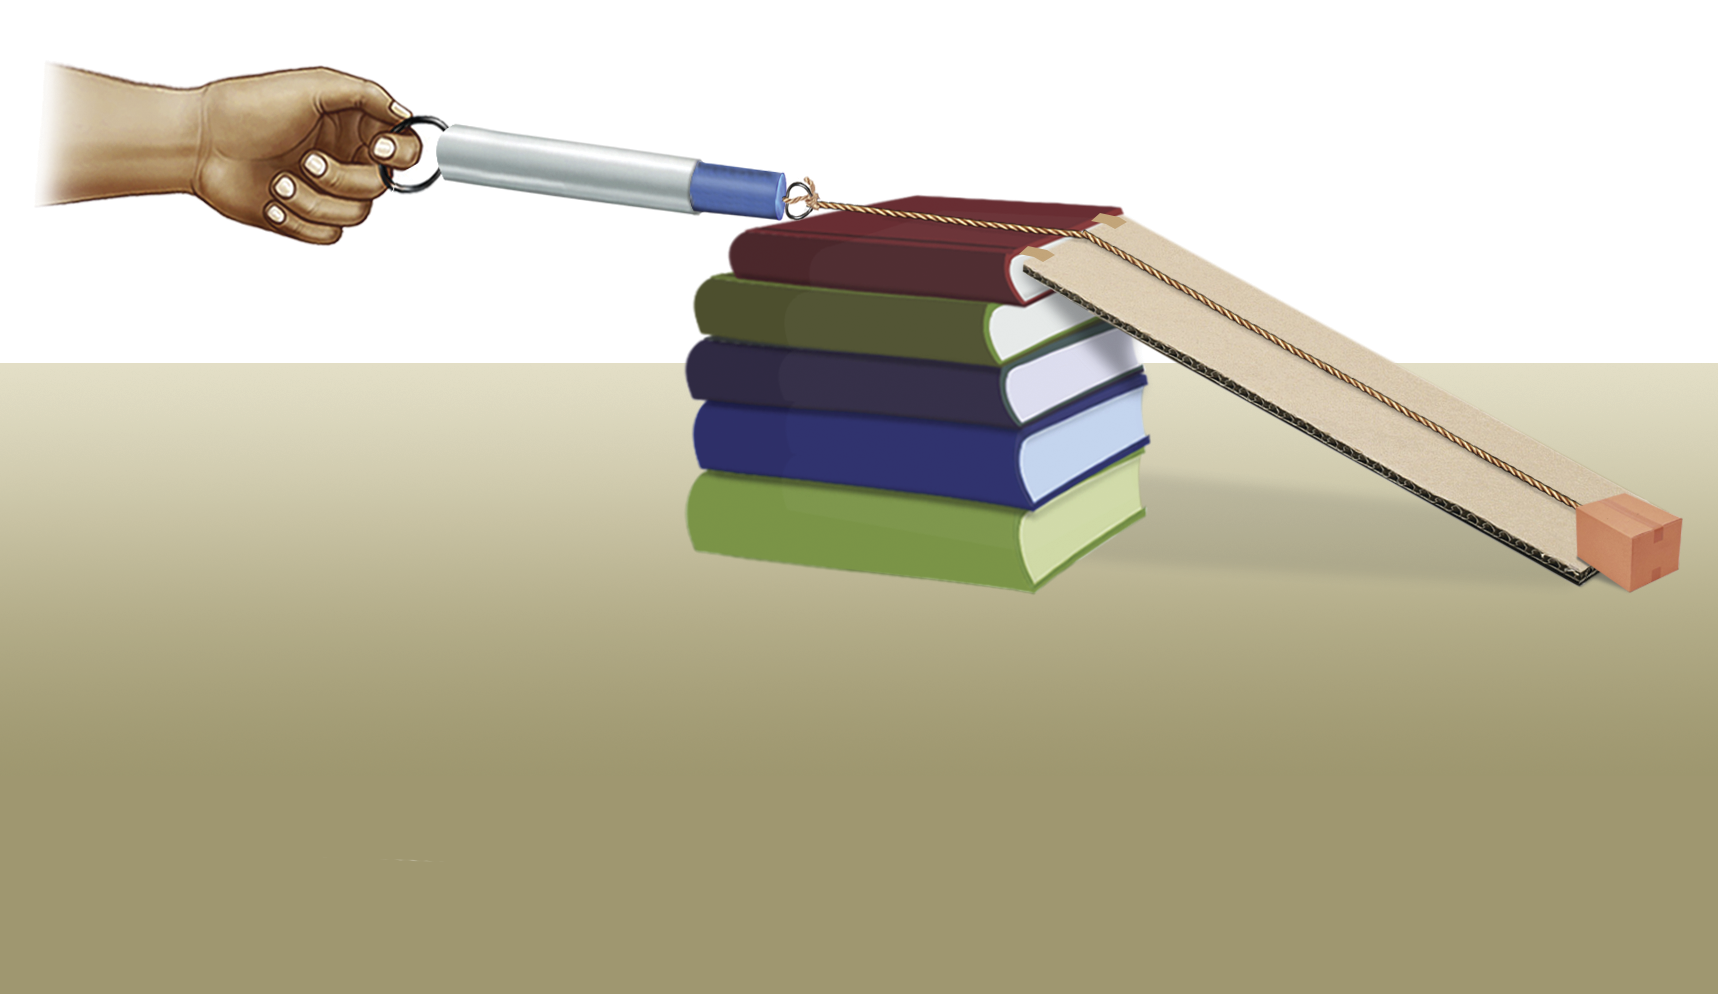 Ilustração. À esquerda, uma mão segurando uma argola que está presa a um objeto cilíndrico, preso a um barbante que passa por um pedaço de papelão que serve de rampa e está apoiado em uma pilha de livros. Na ponta do barbante há um cubo laranja.